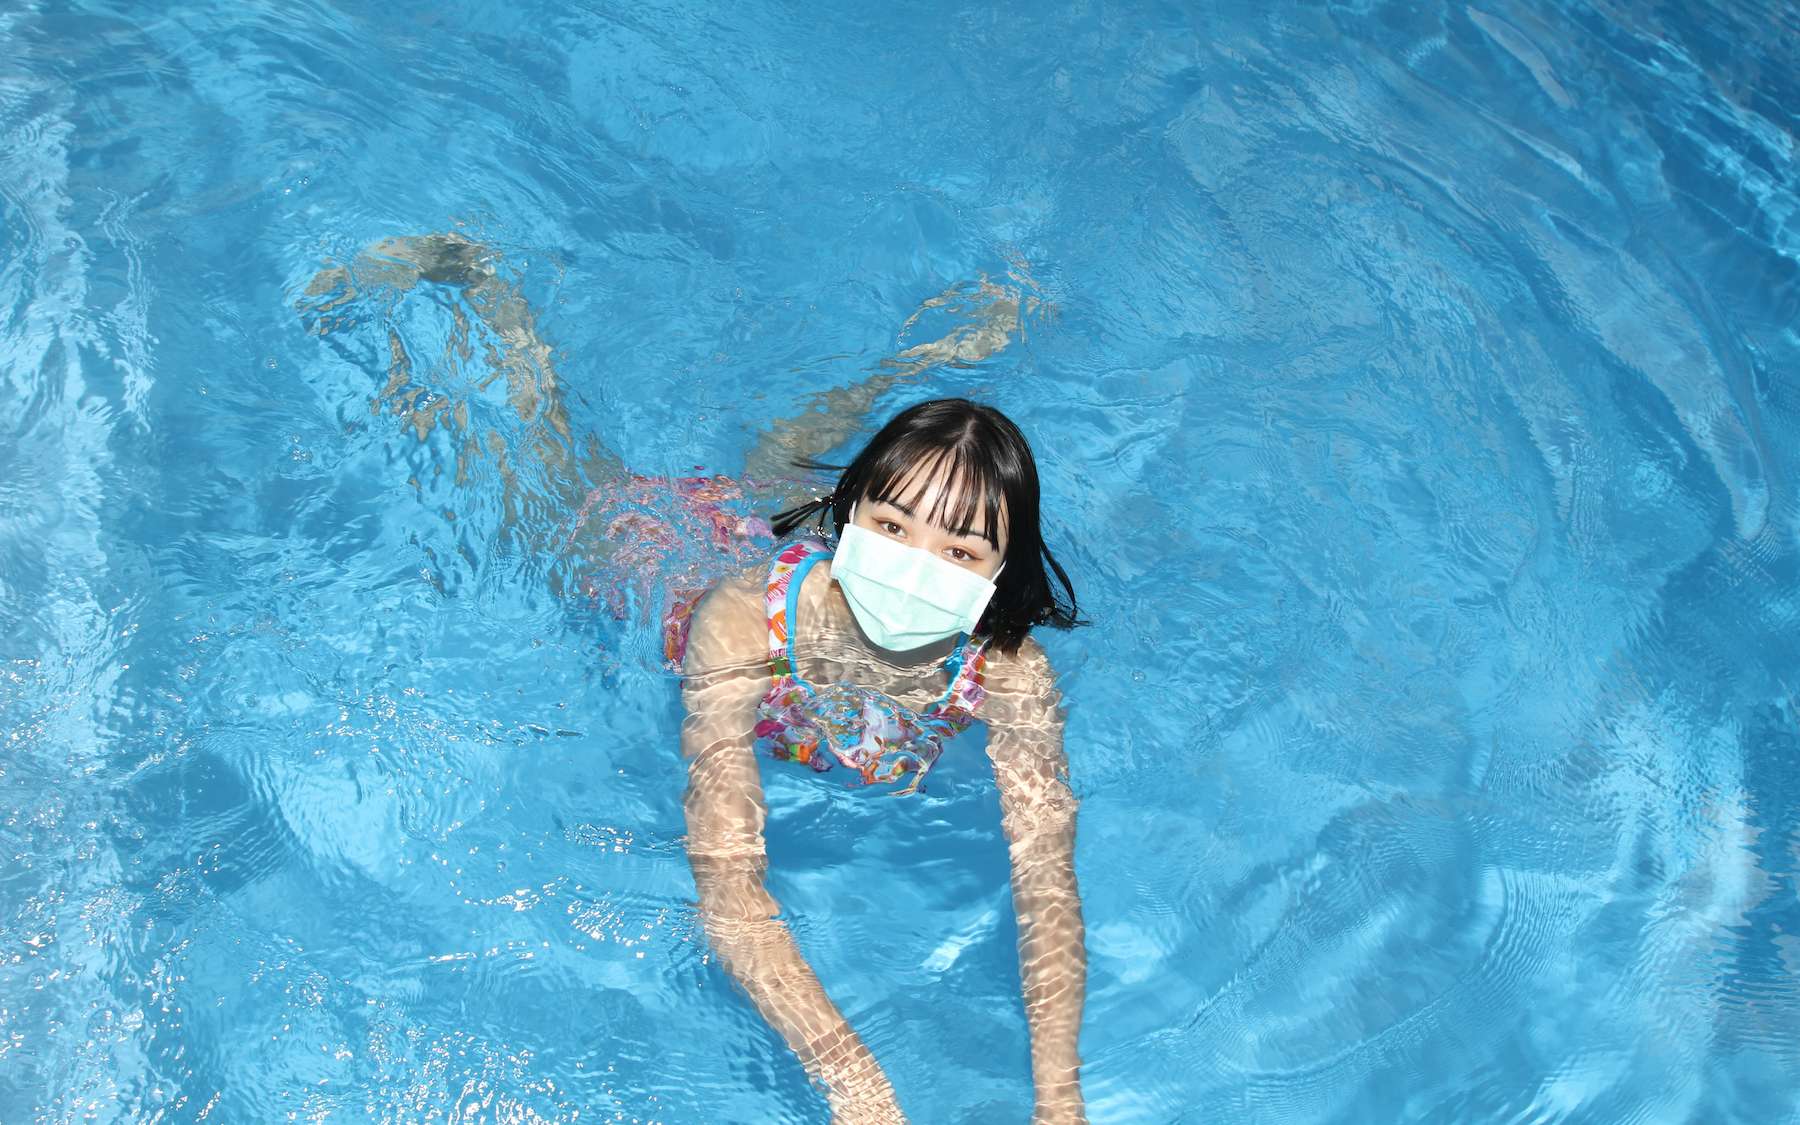 Quali sono gli effetti della condensa sui nuotatori?